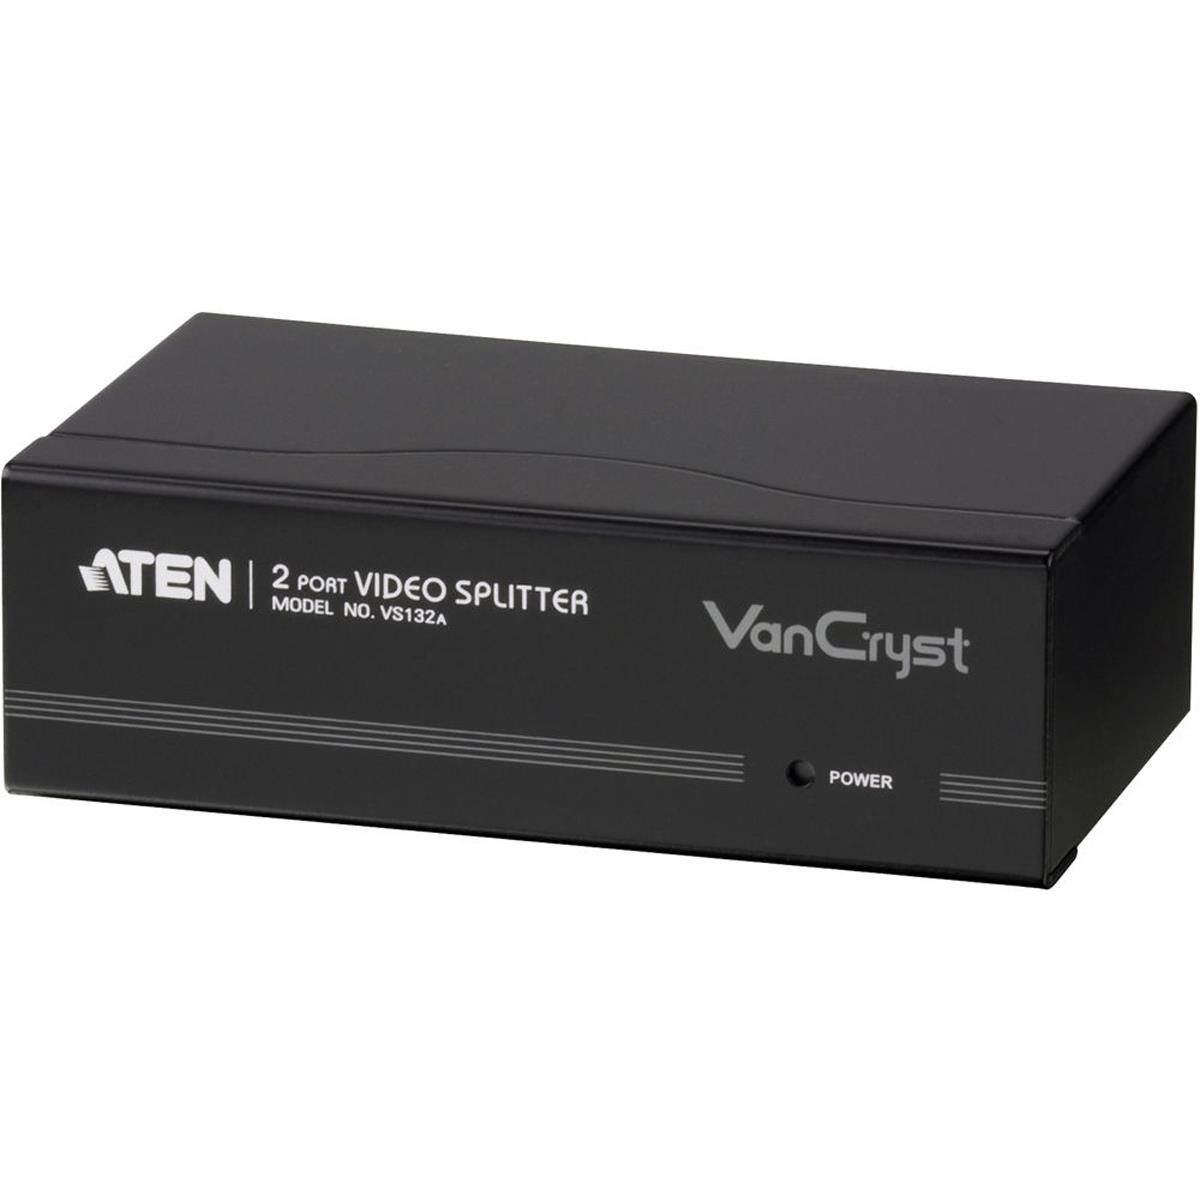 

Aten VS132A 2-Port VGA Video Splitter